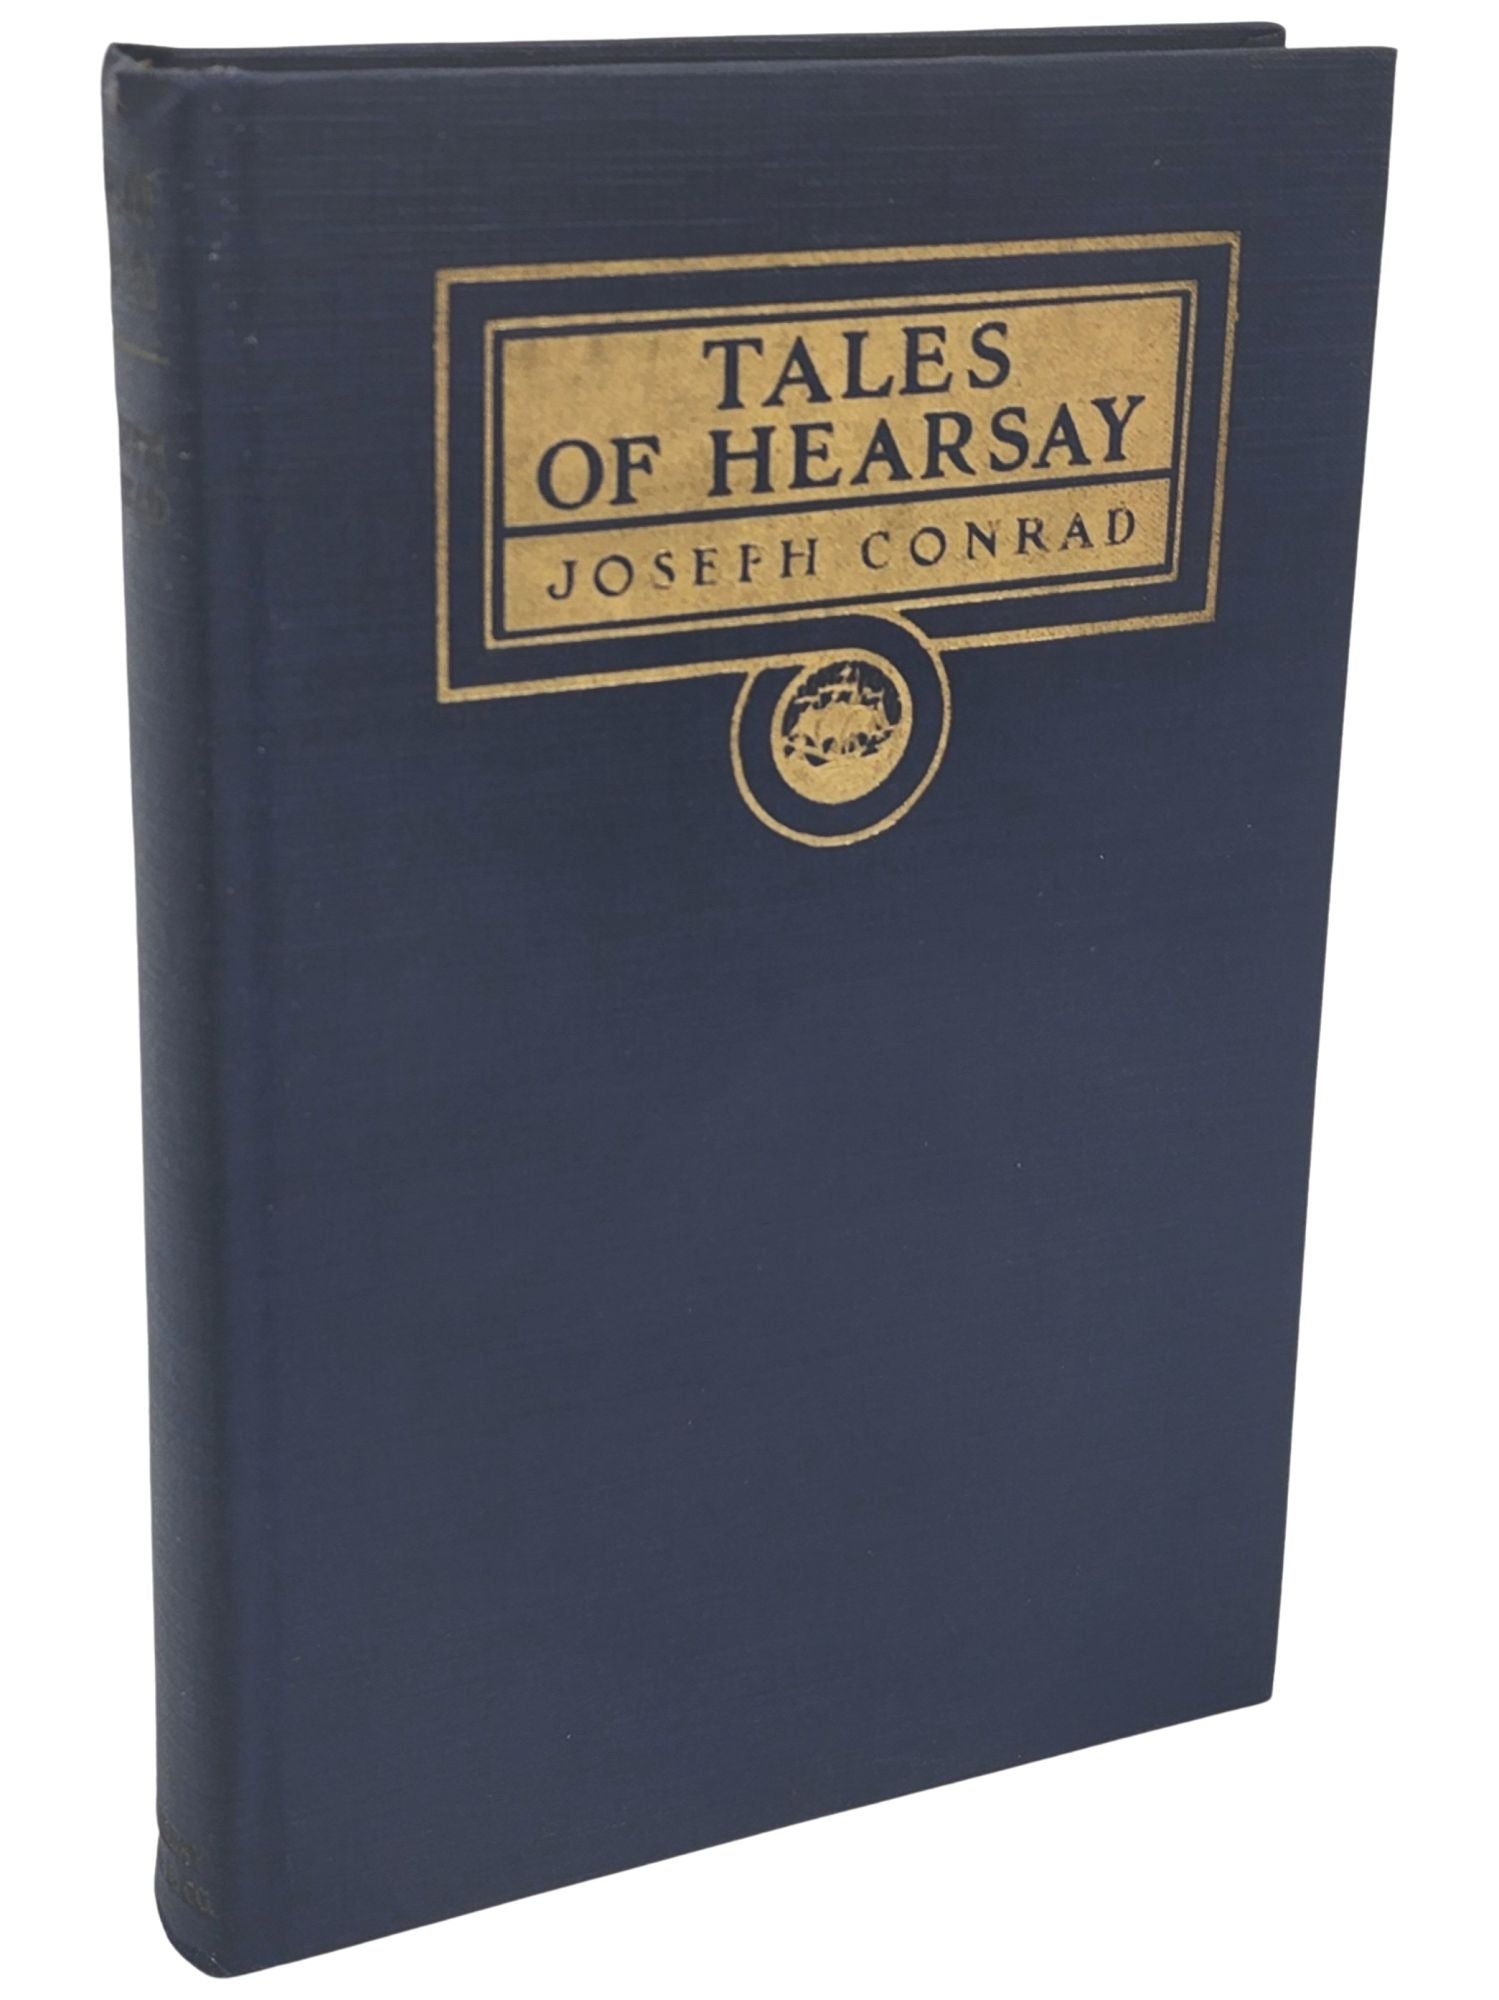 [Book #50765] TALES OF HEARSAY. Joseph Conrad.